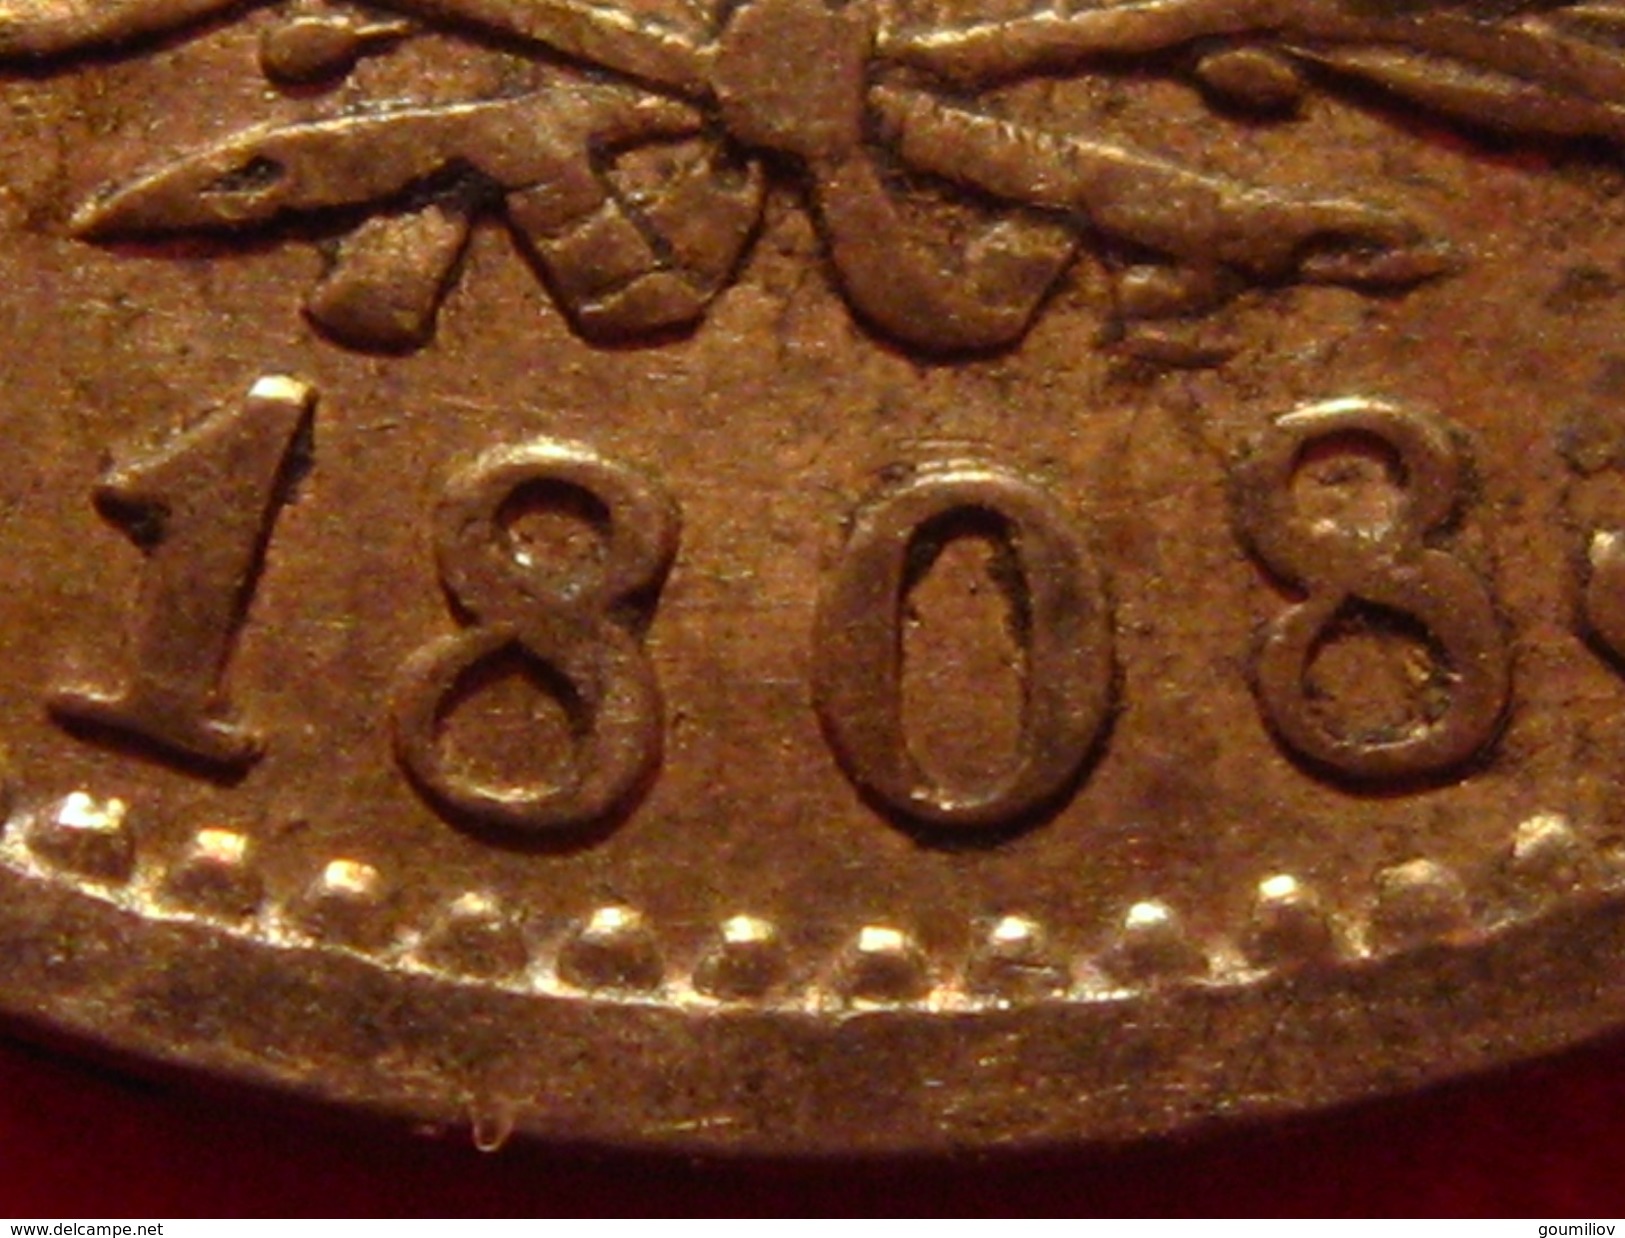 France - 1 franc 1808 A Paris Napoléon Ier - Superbe patine dorée 0193